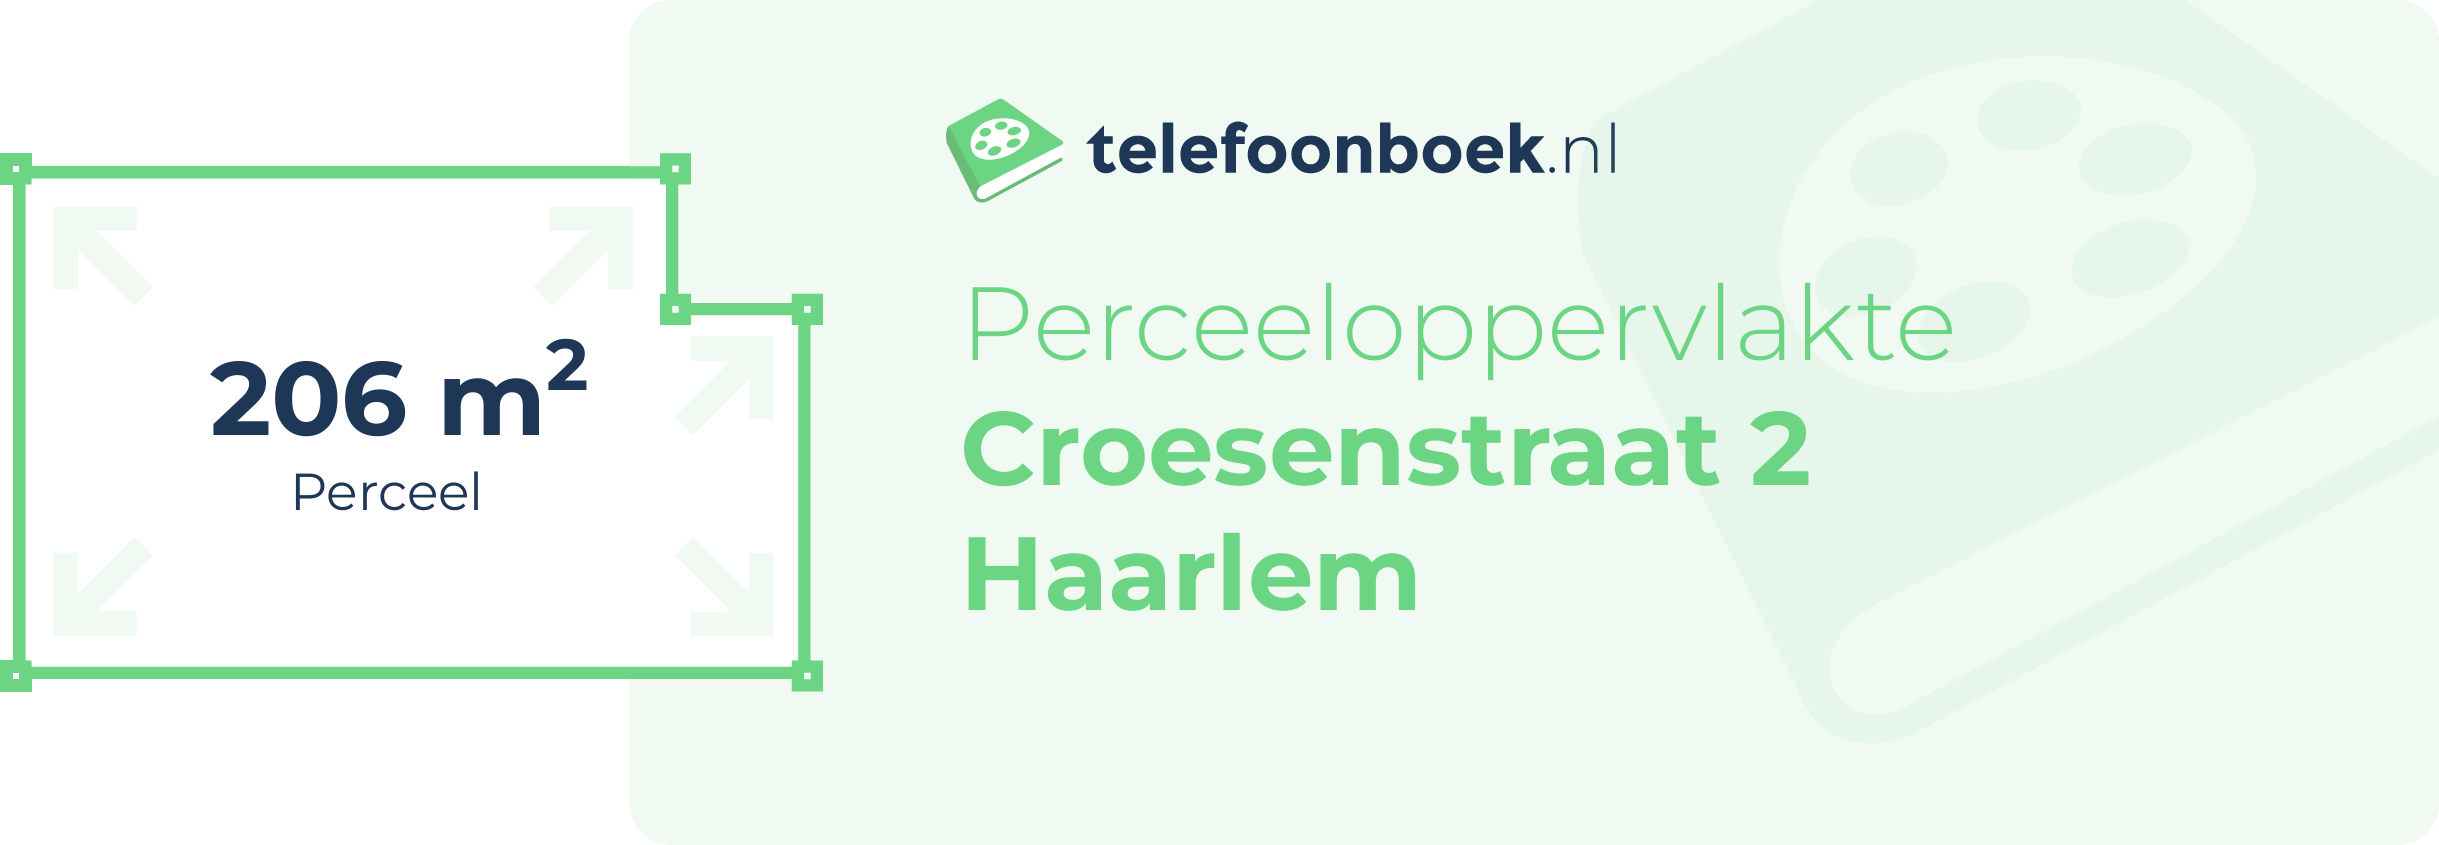 Perceeloppervlakte Croesenstraat 2 Haarlem